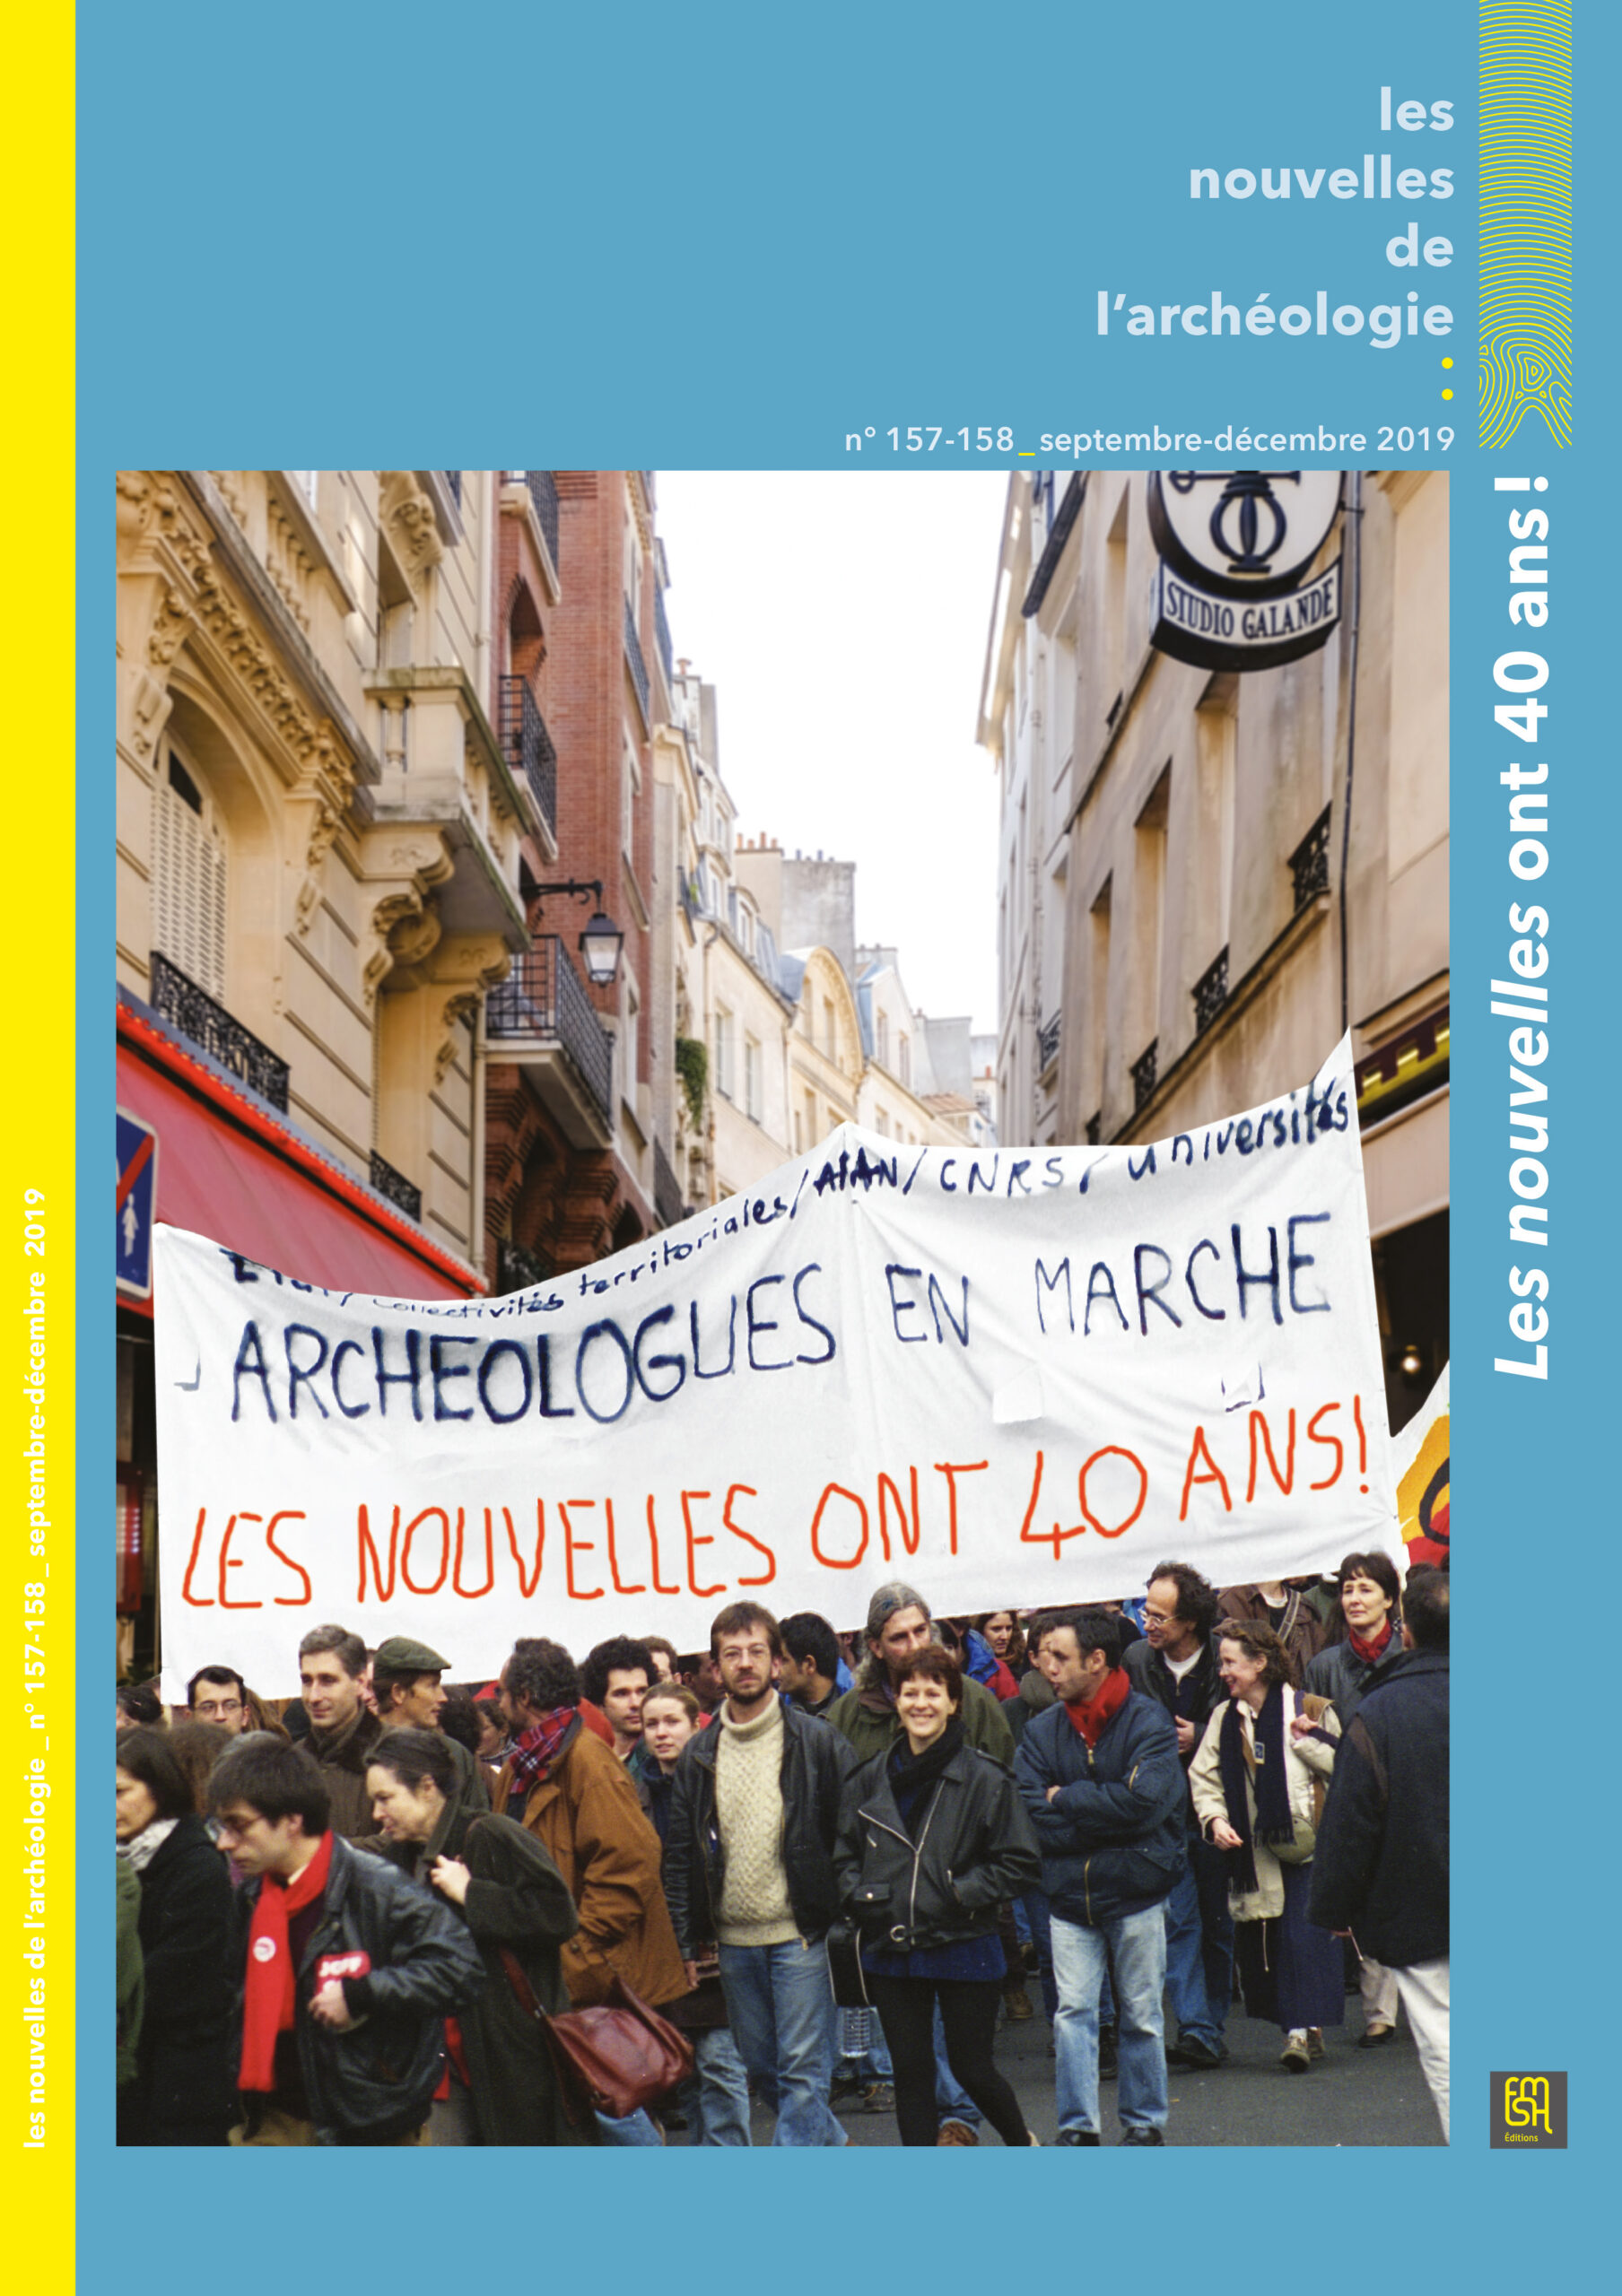 Les Nouvelles de l'archéologie (les), n° 157-158, septembre-décembre 2019